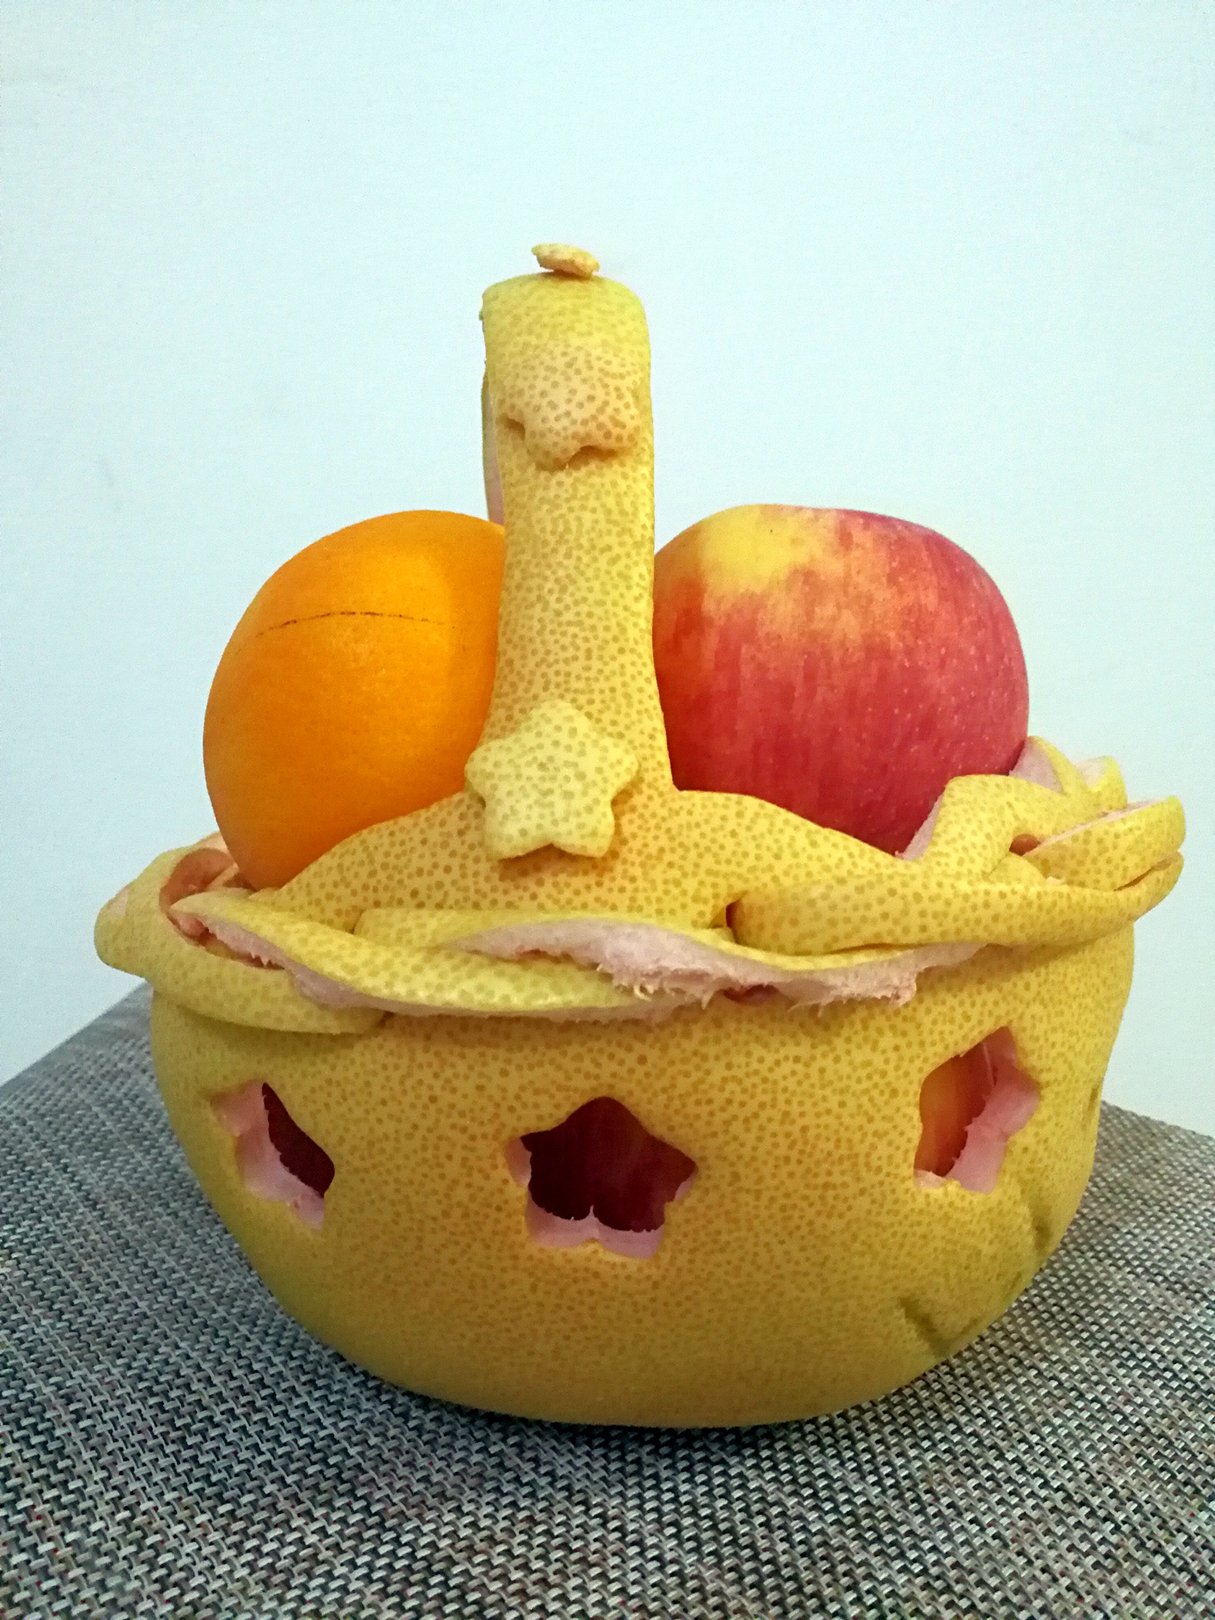 用柚子皮做花篮图片